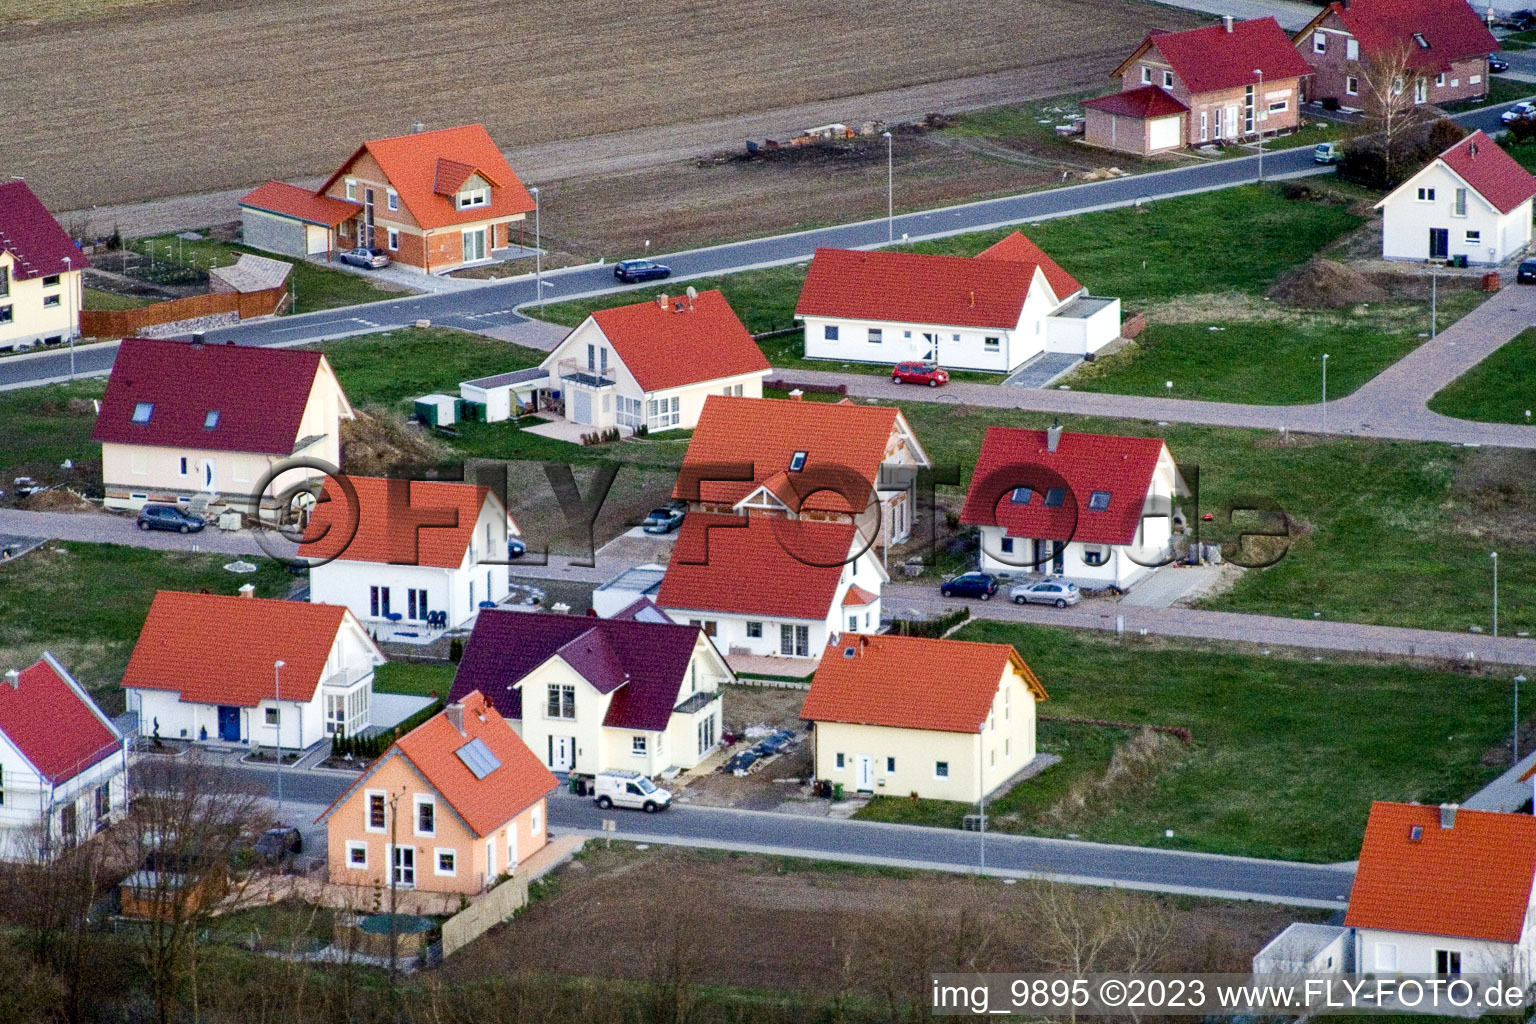 Schaidt, Neubaugebiet NO in Wörth am Rhein im Bundesland Rheinland-Pfalz, Deutschland aus der Luft betrachtet